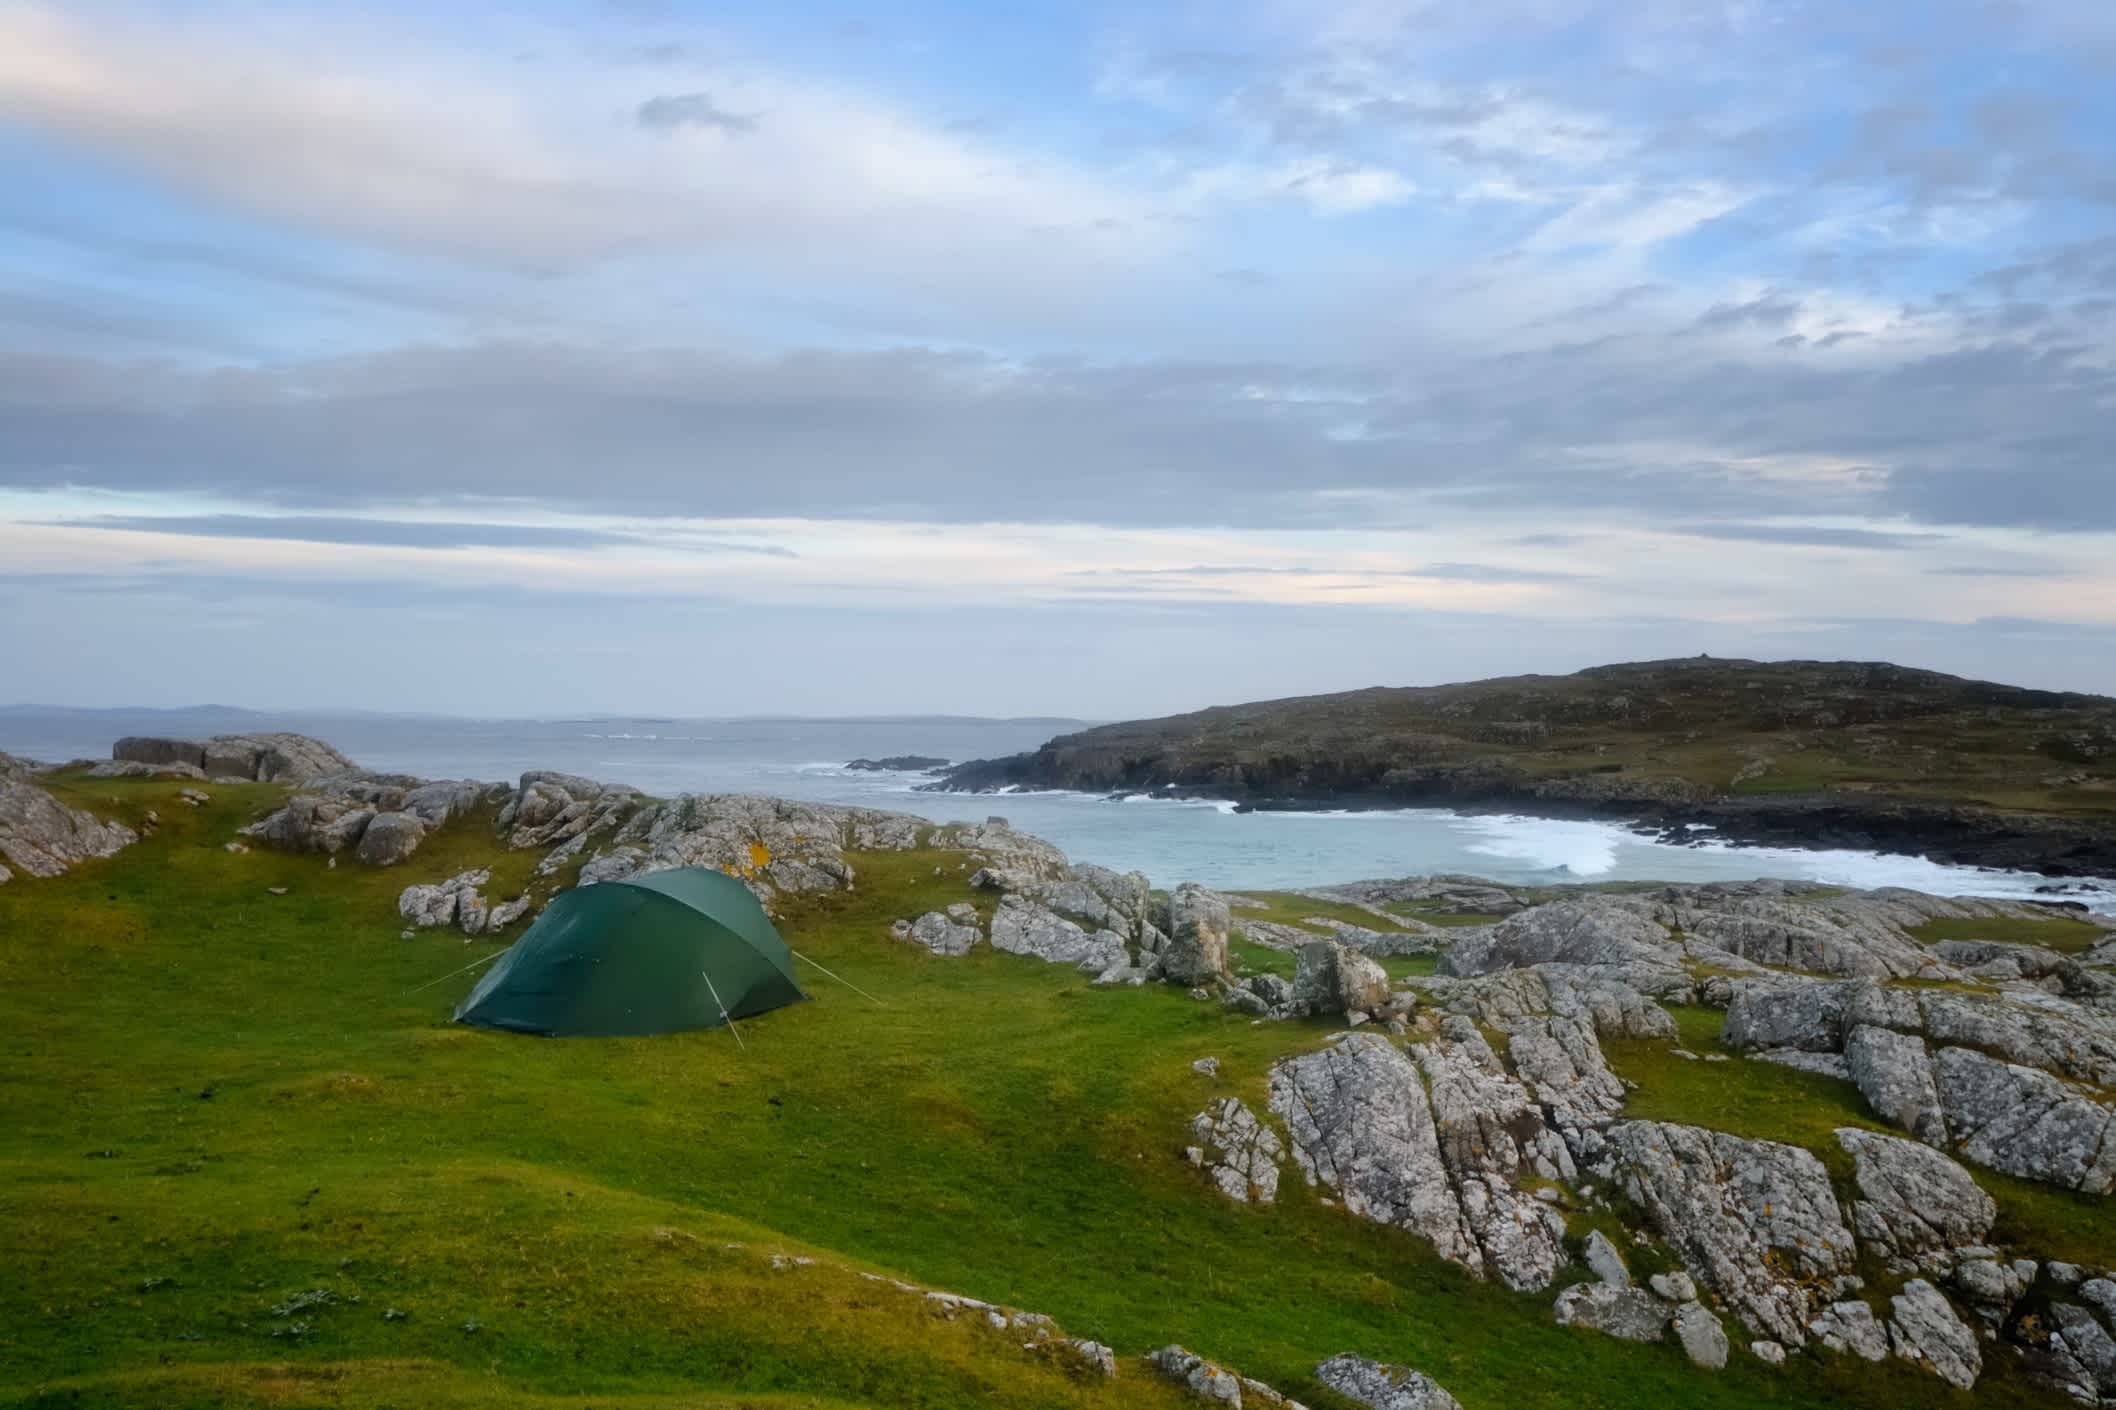 Camping en pleine nature sur la côte irlandaise dans la région de Galway.
